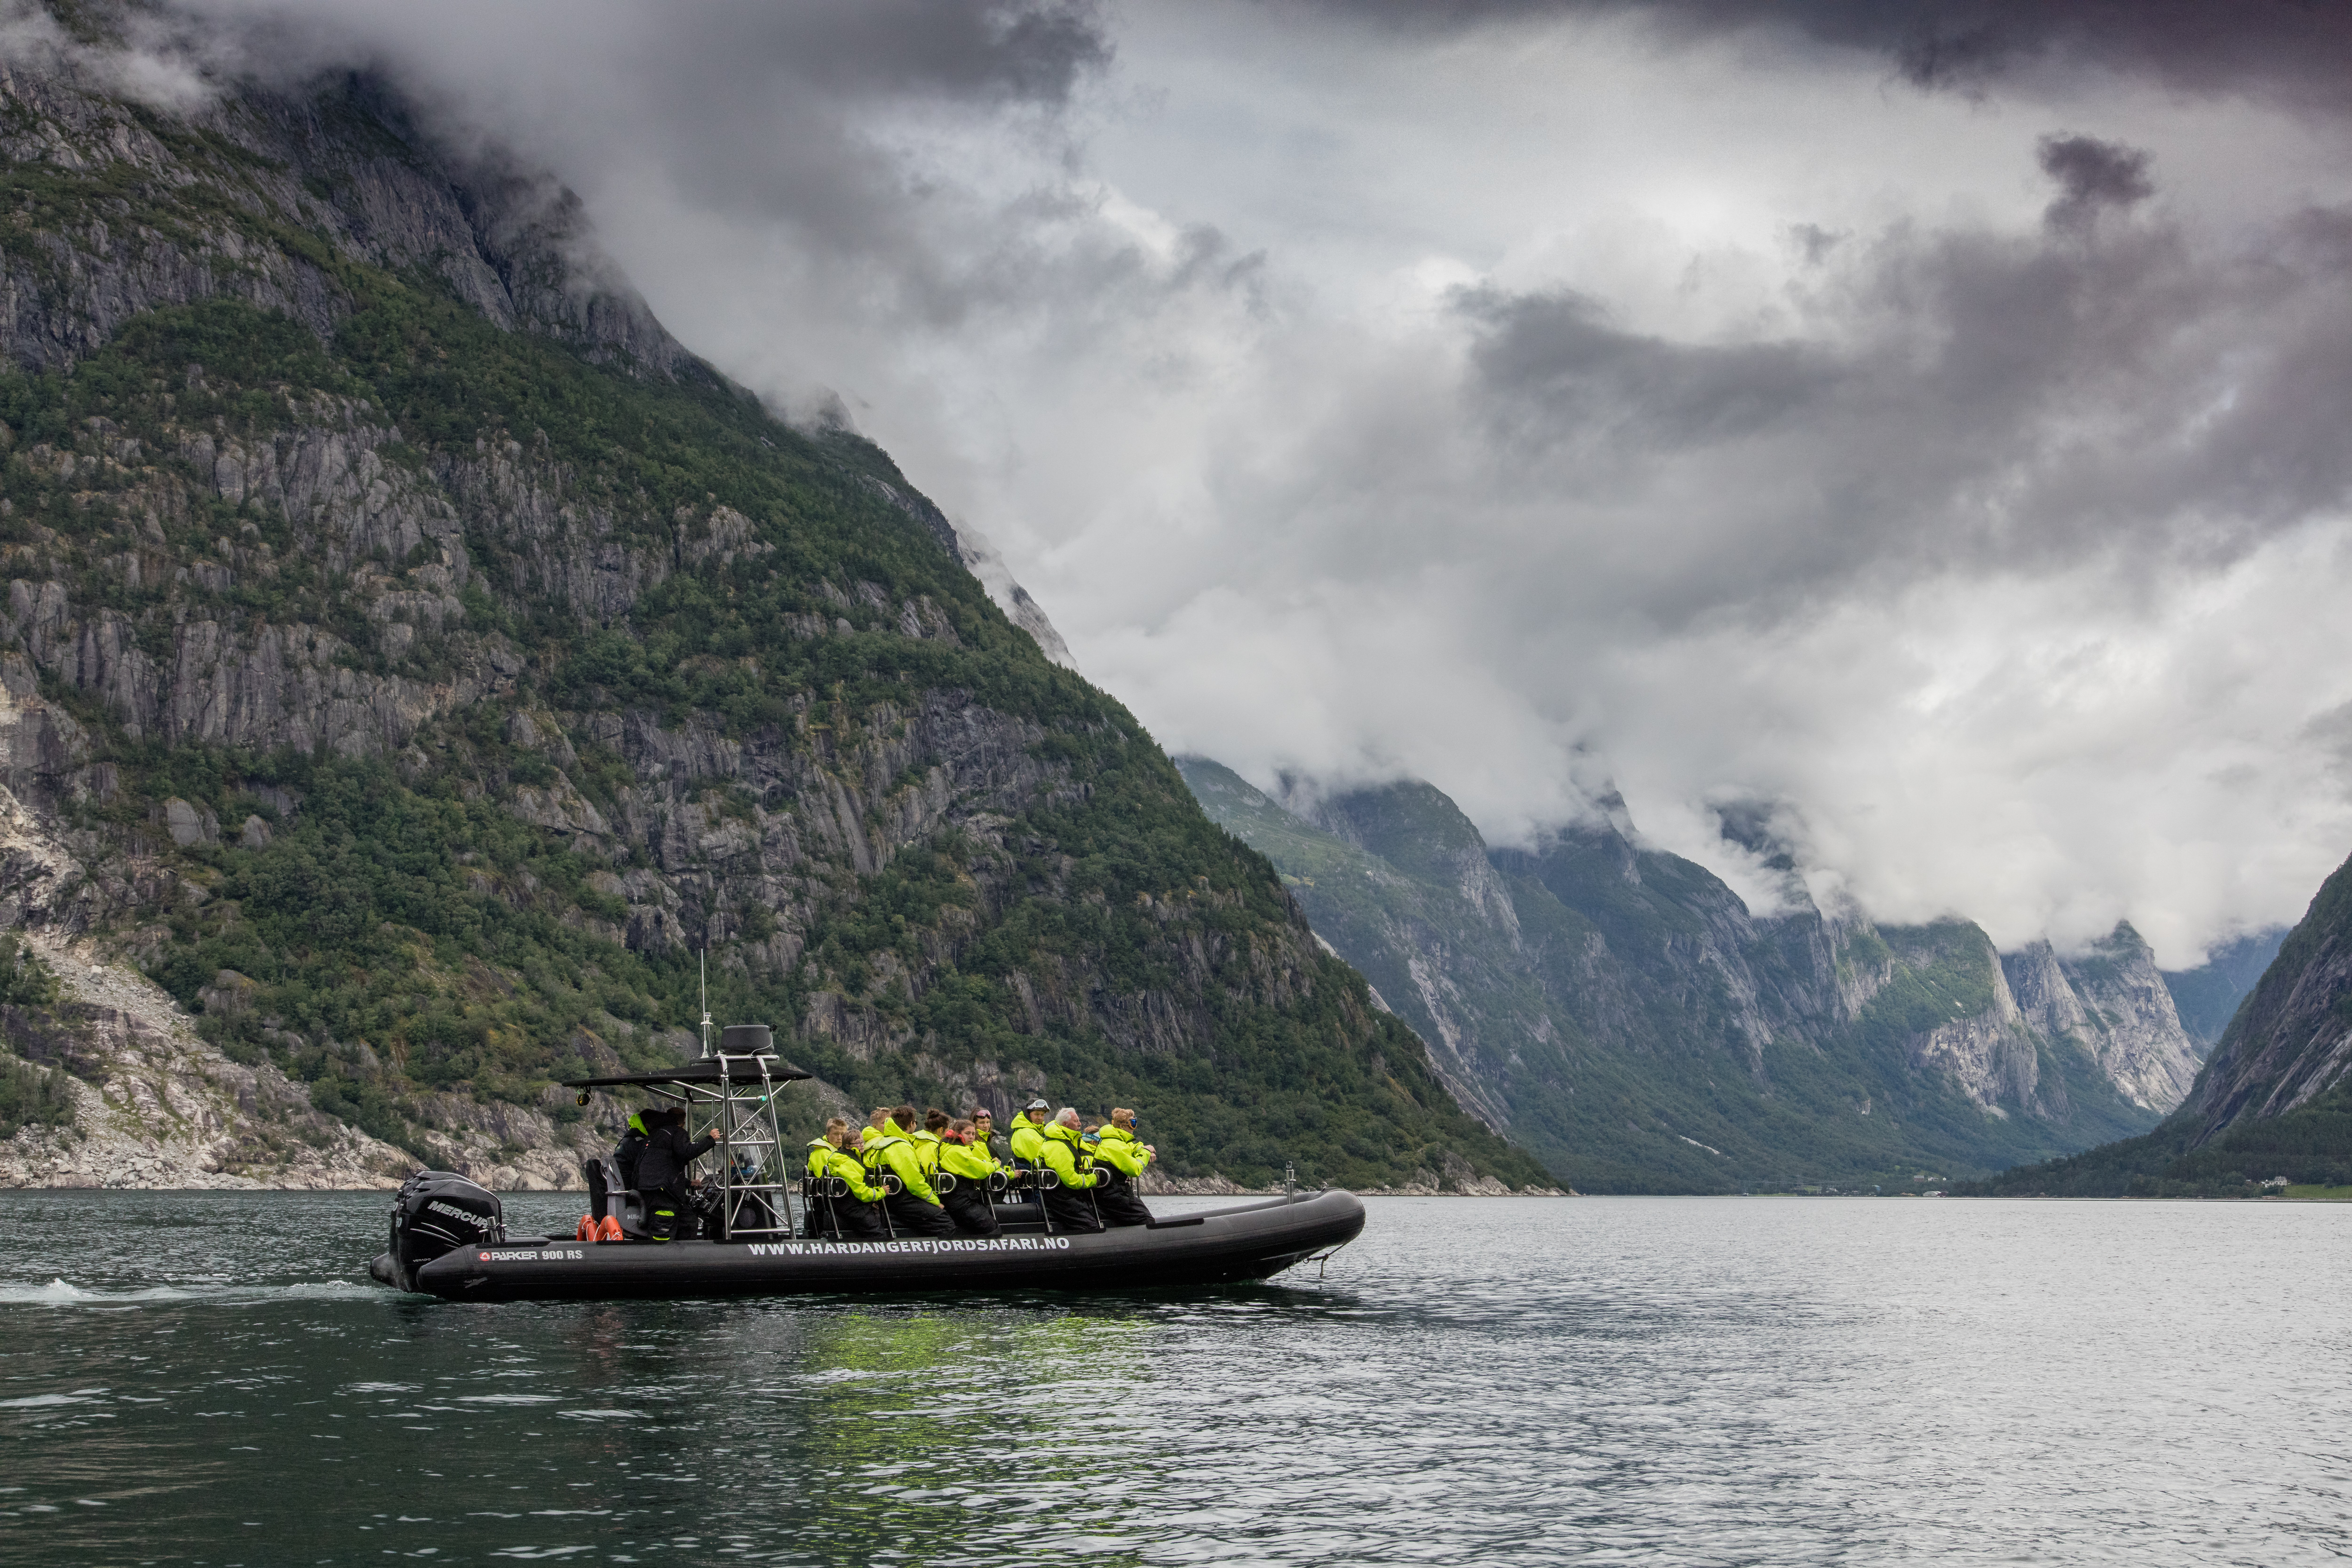 Hardanger Fjordsafari - 30 minutes RIB boat tour